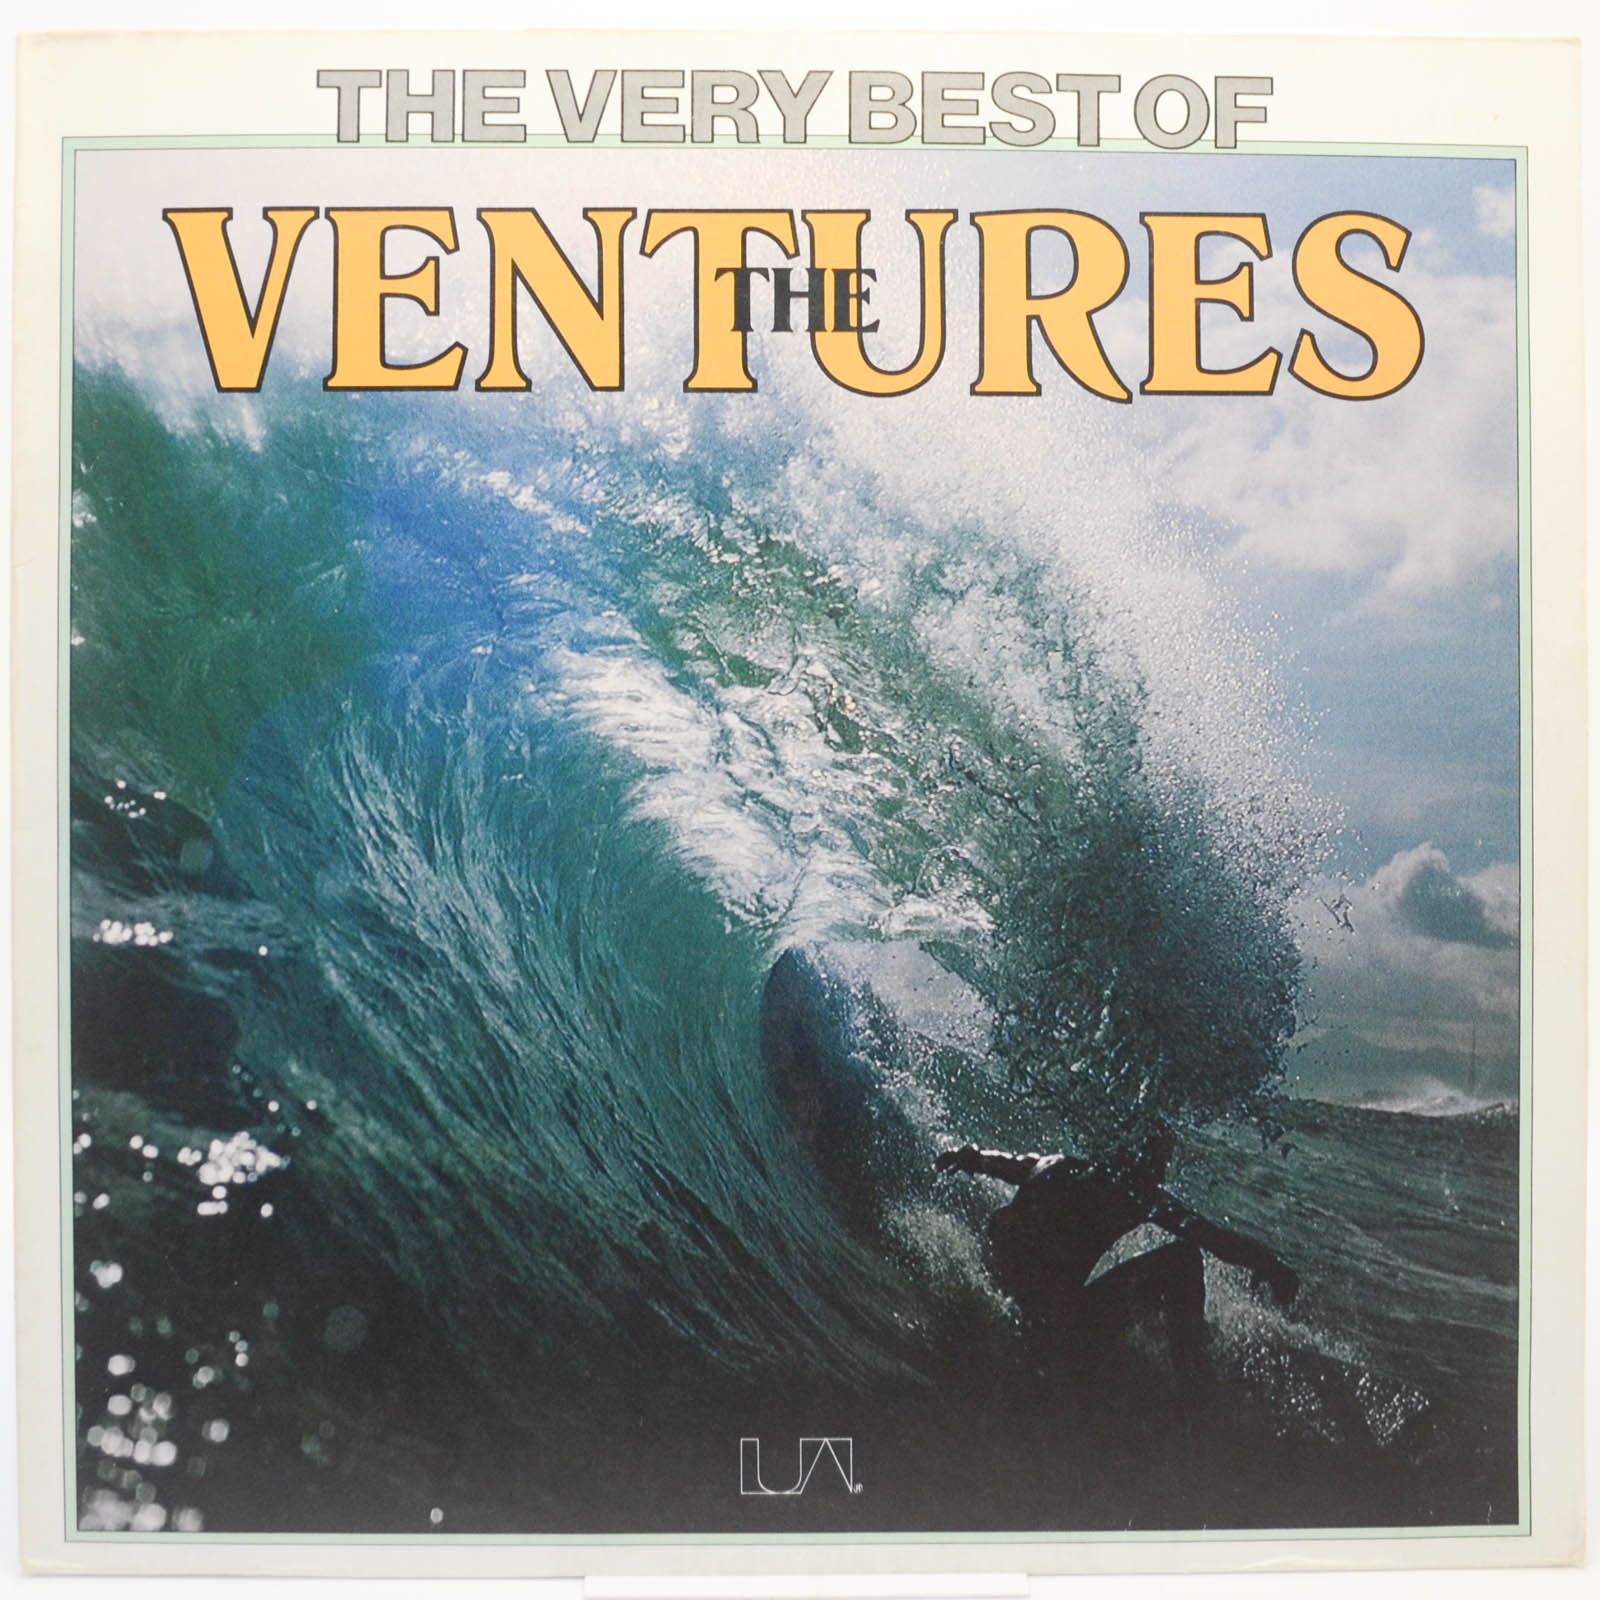 Ventures — The Very Best Of The Ventures, 1975